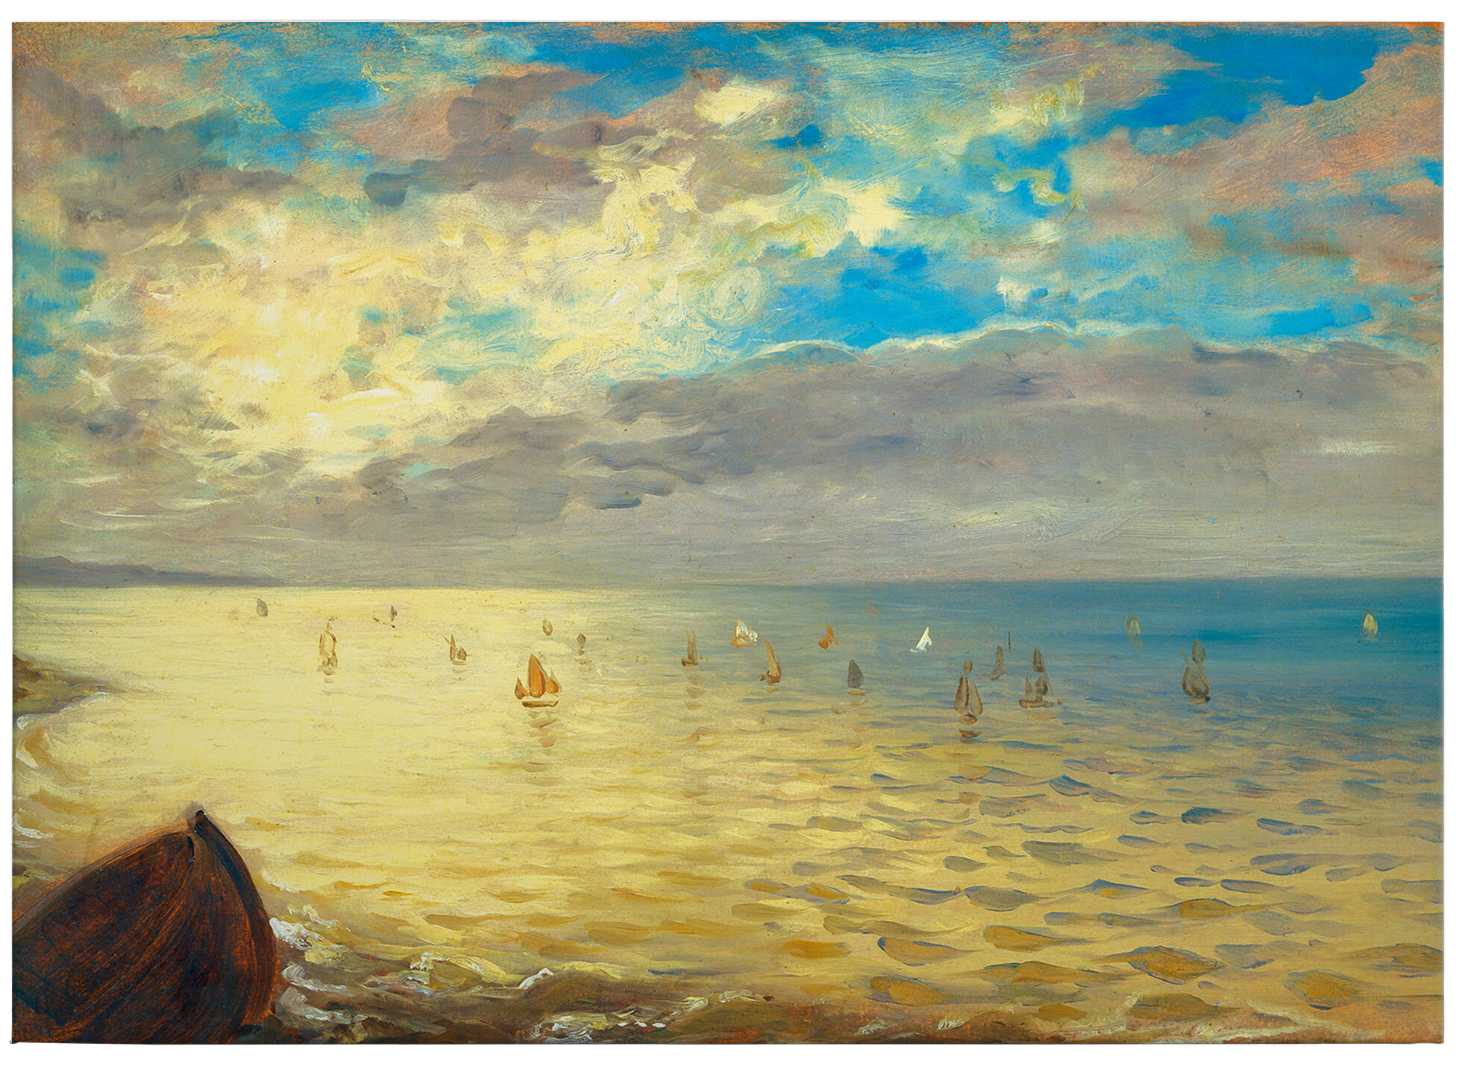             Art canvas print "The sea" by Delacroix
        